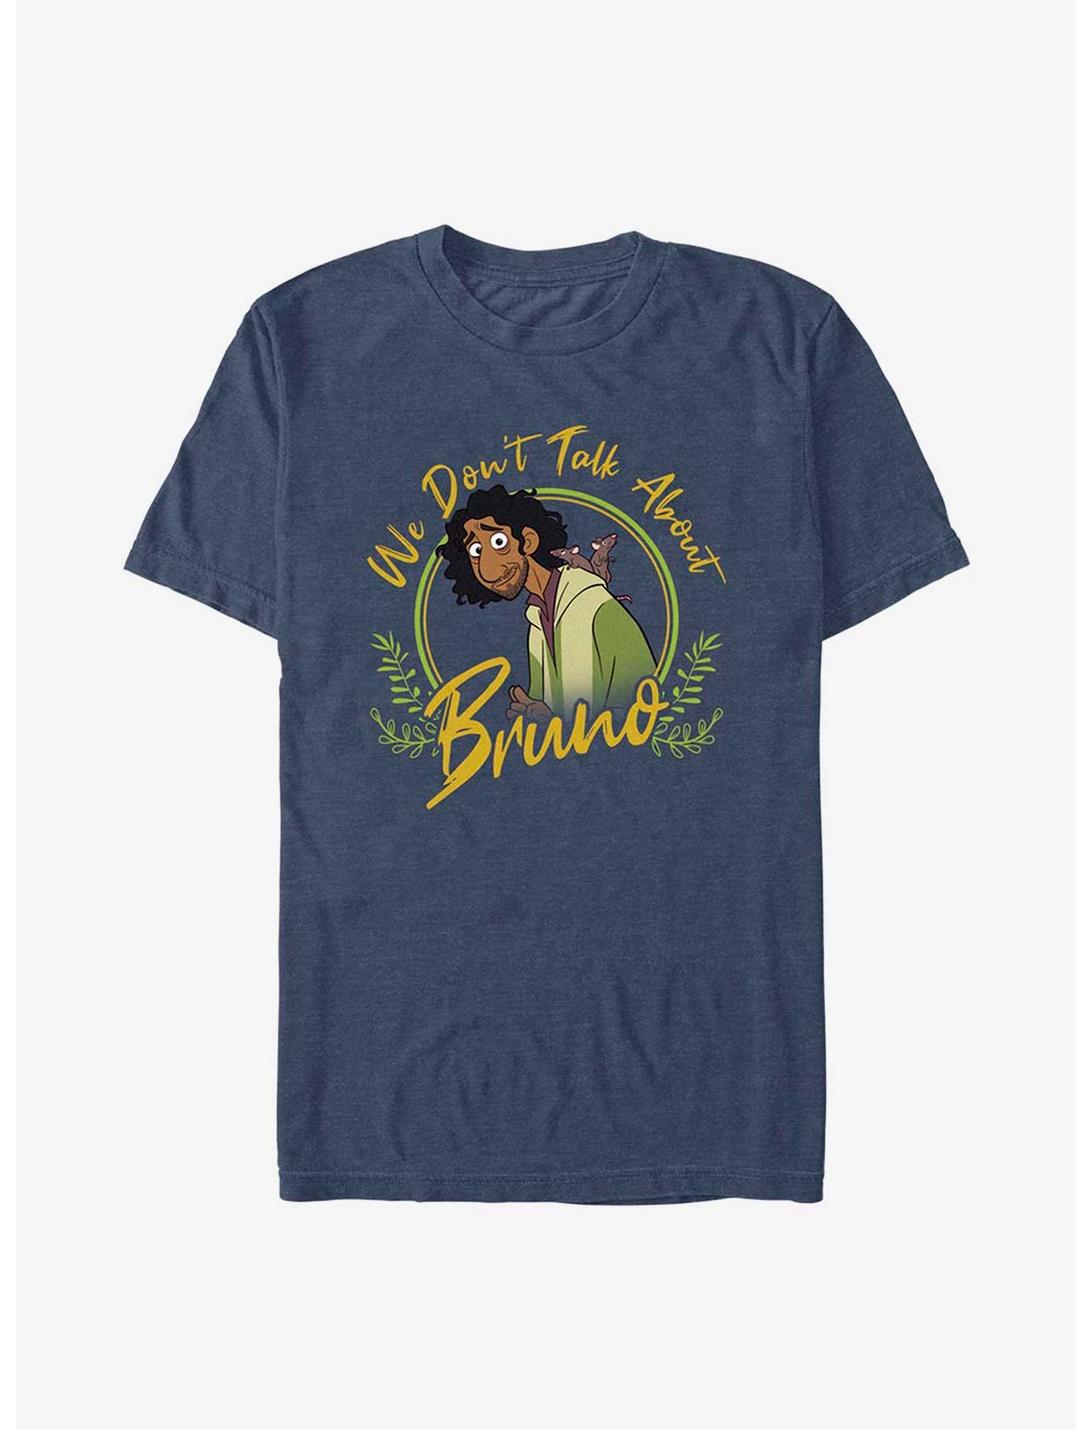 Disney Encanto We Don't Talk About Bruno T-Shirt, NAVY HTR, hi-res